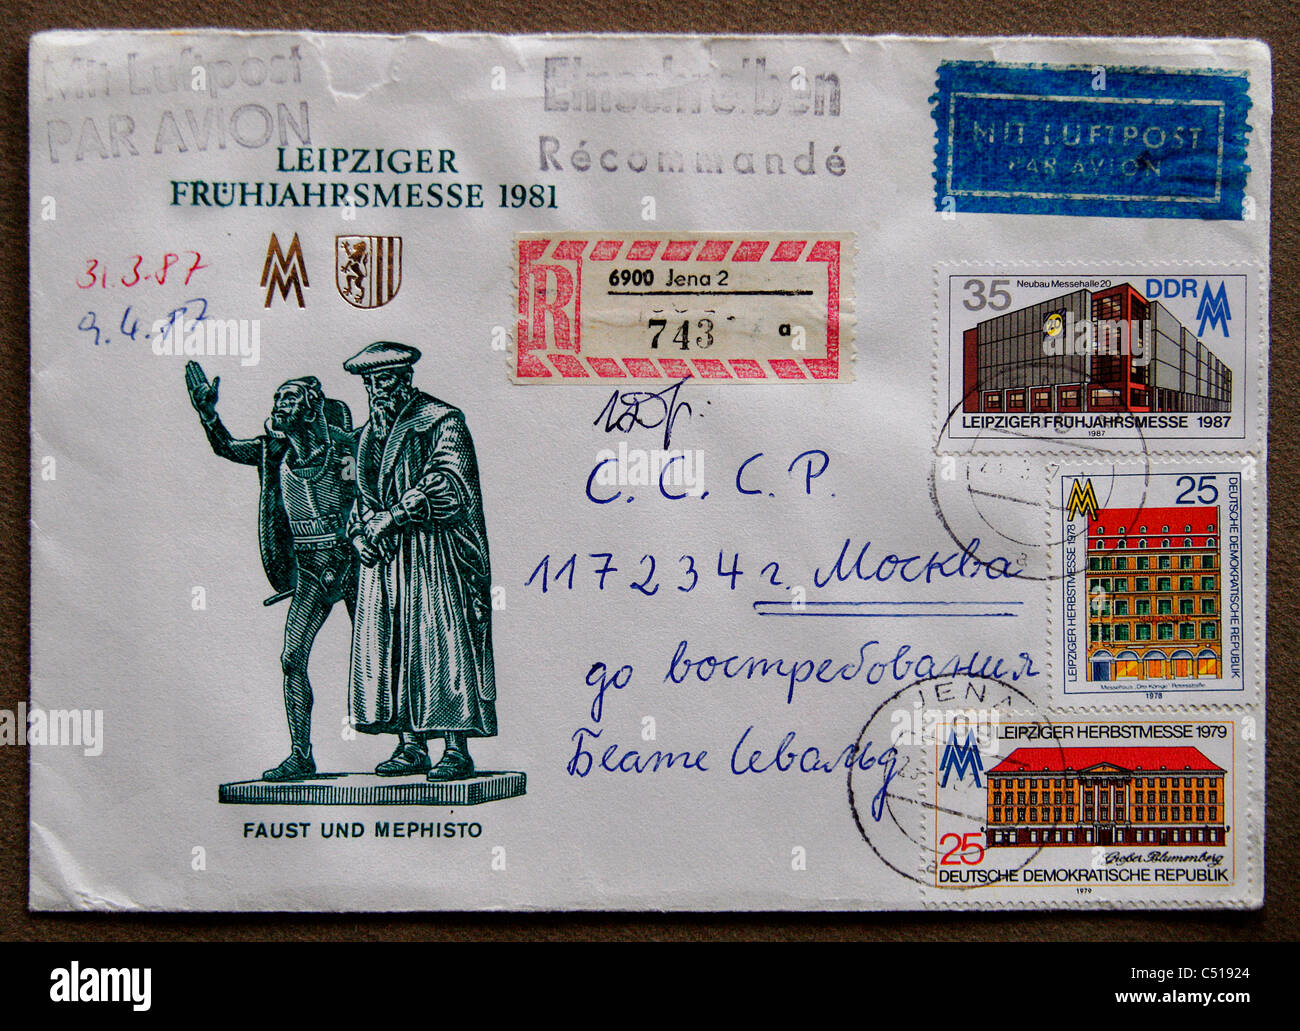 Ein Ersttagsbrief / Brief aus der ehemaligen DDR, die Angst im Frühjahr 1981 in Leipzig darstellt. Stockfoto